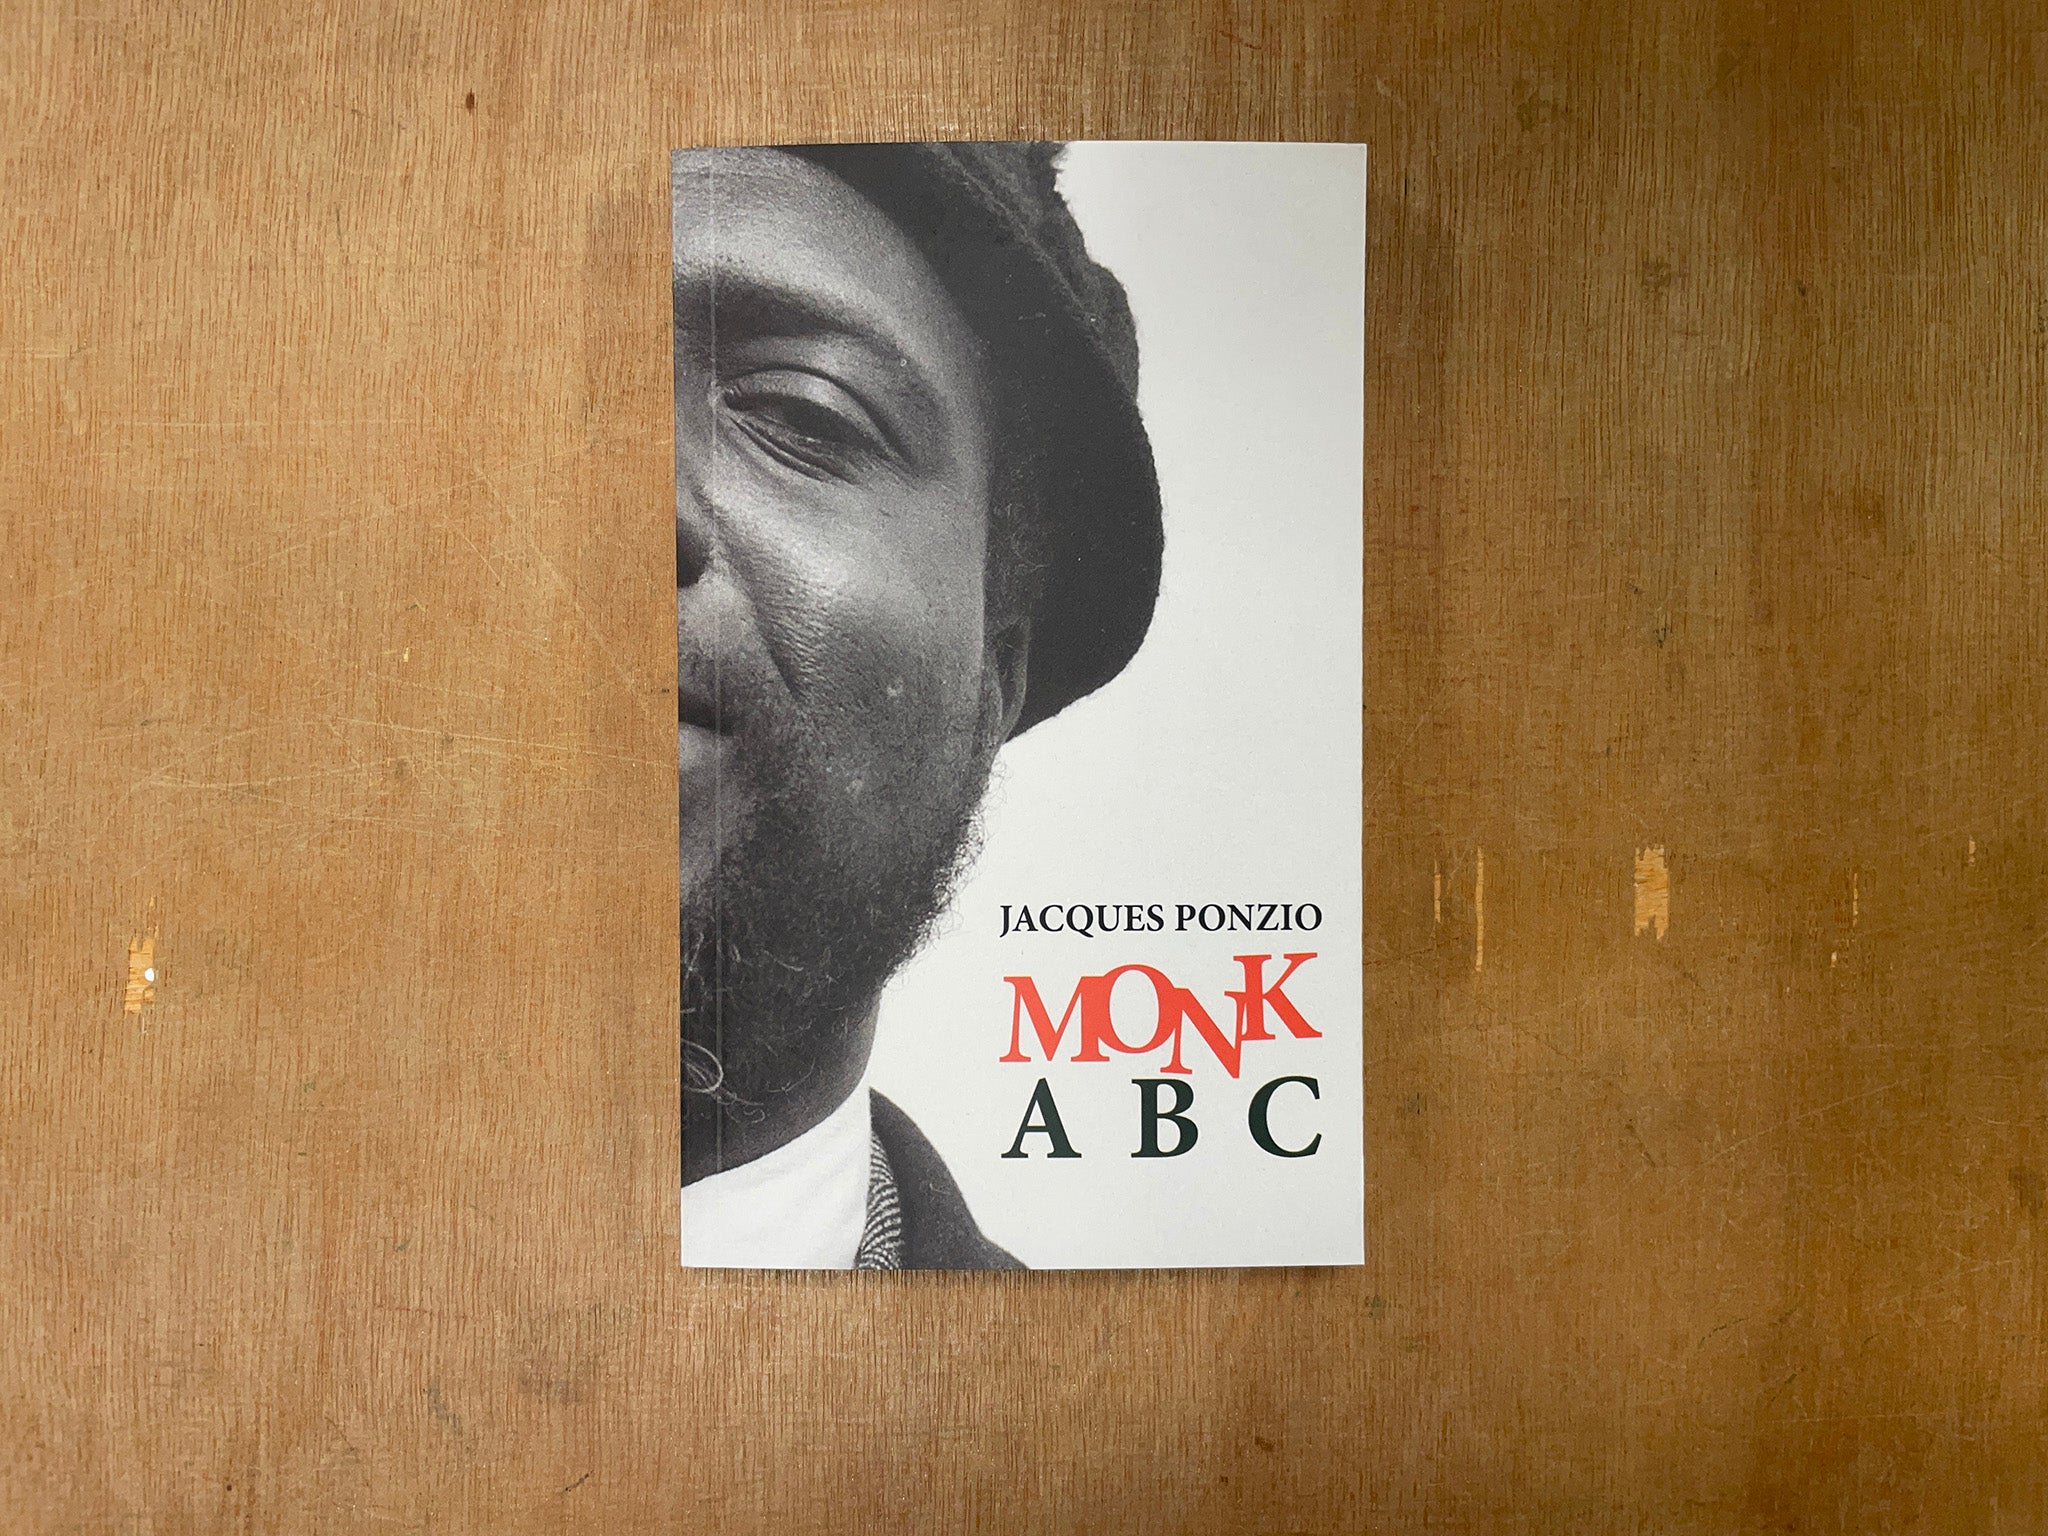 MONK ABC by Jacques Ponzio